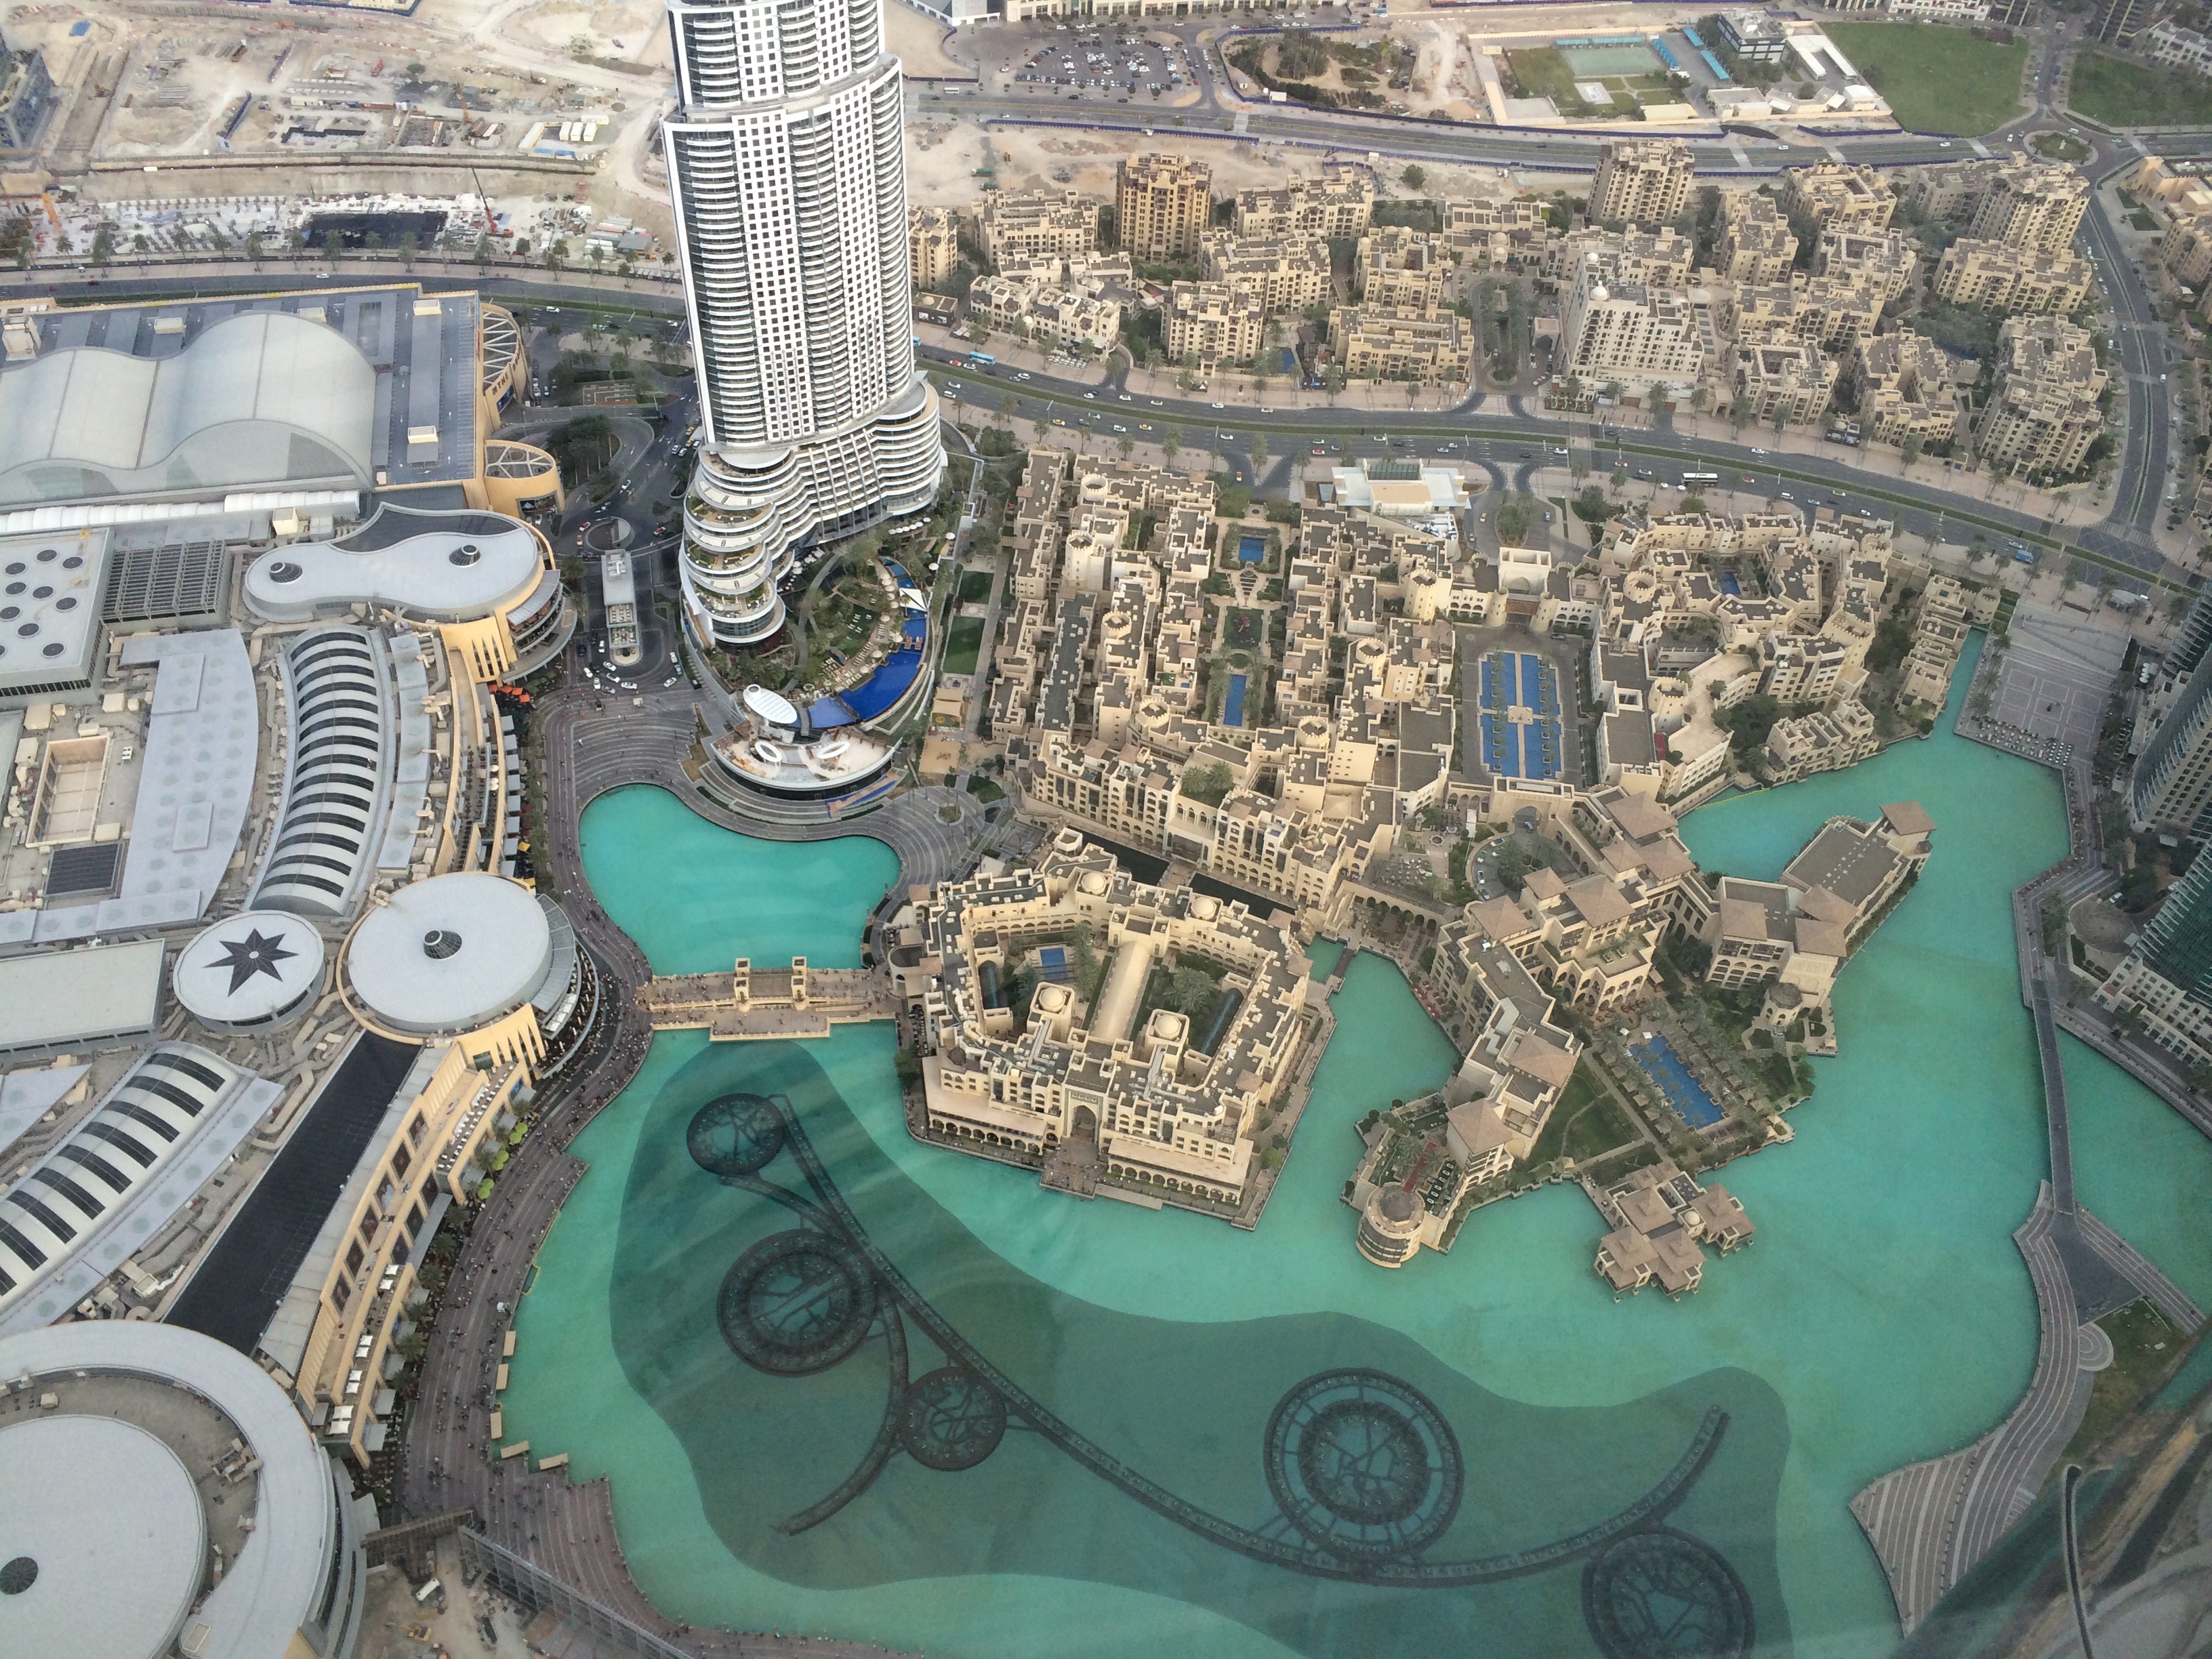 Peninsula Дубай. Музей будущего в Дубае.